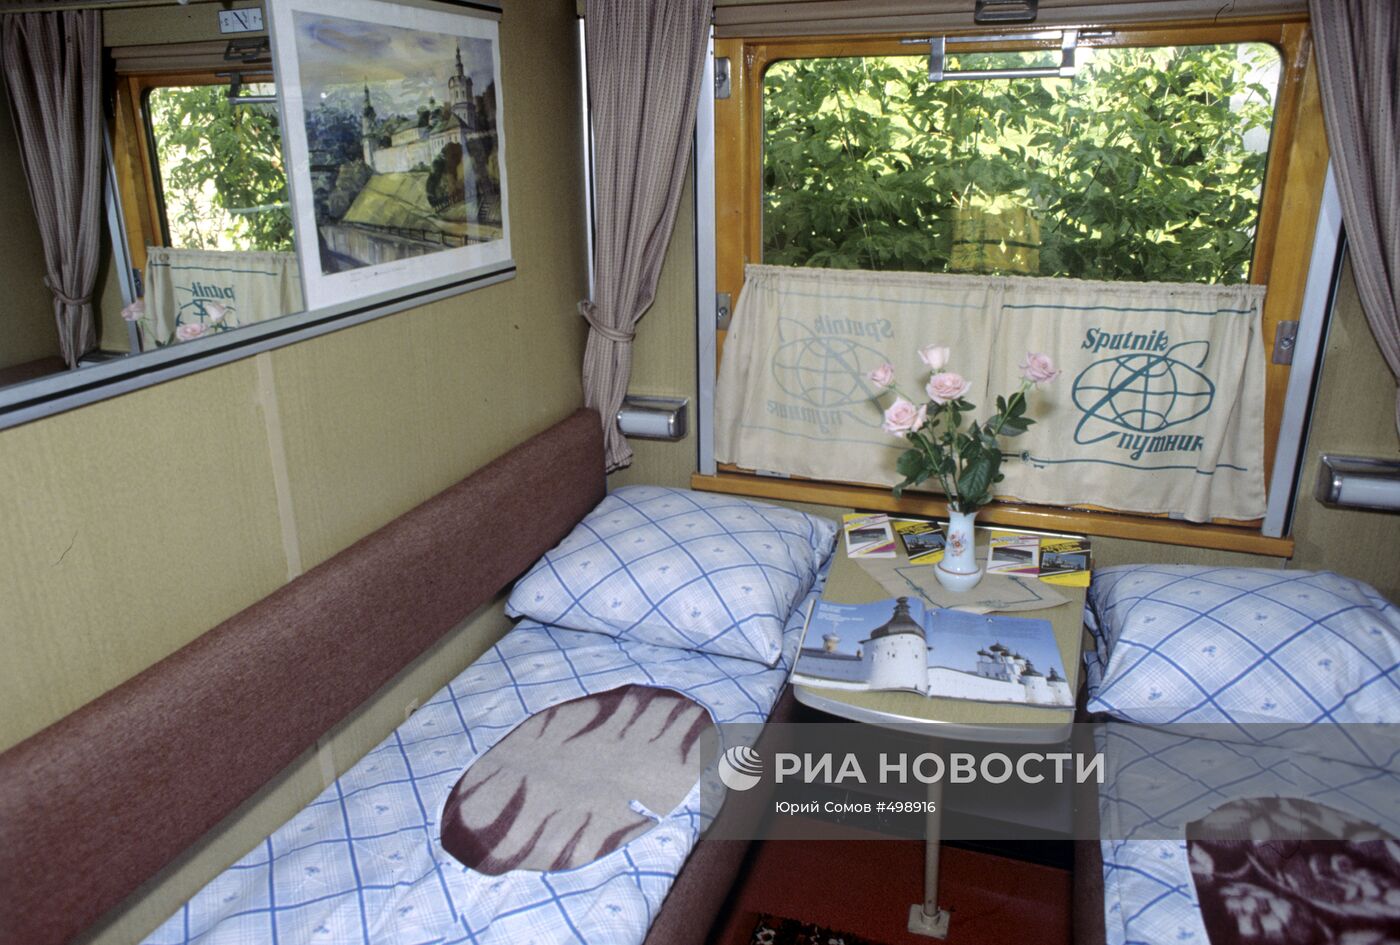 Спальный вагон фирменного поезда "Спутник"